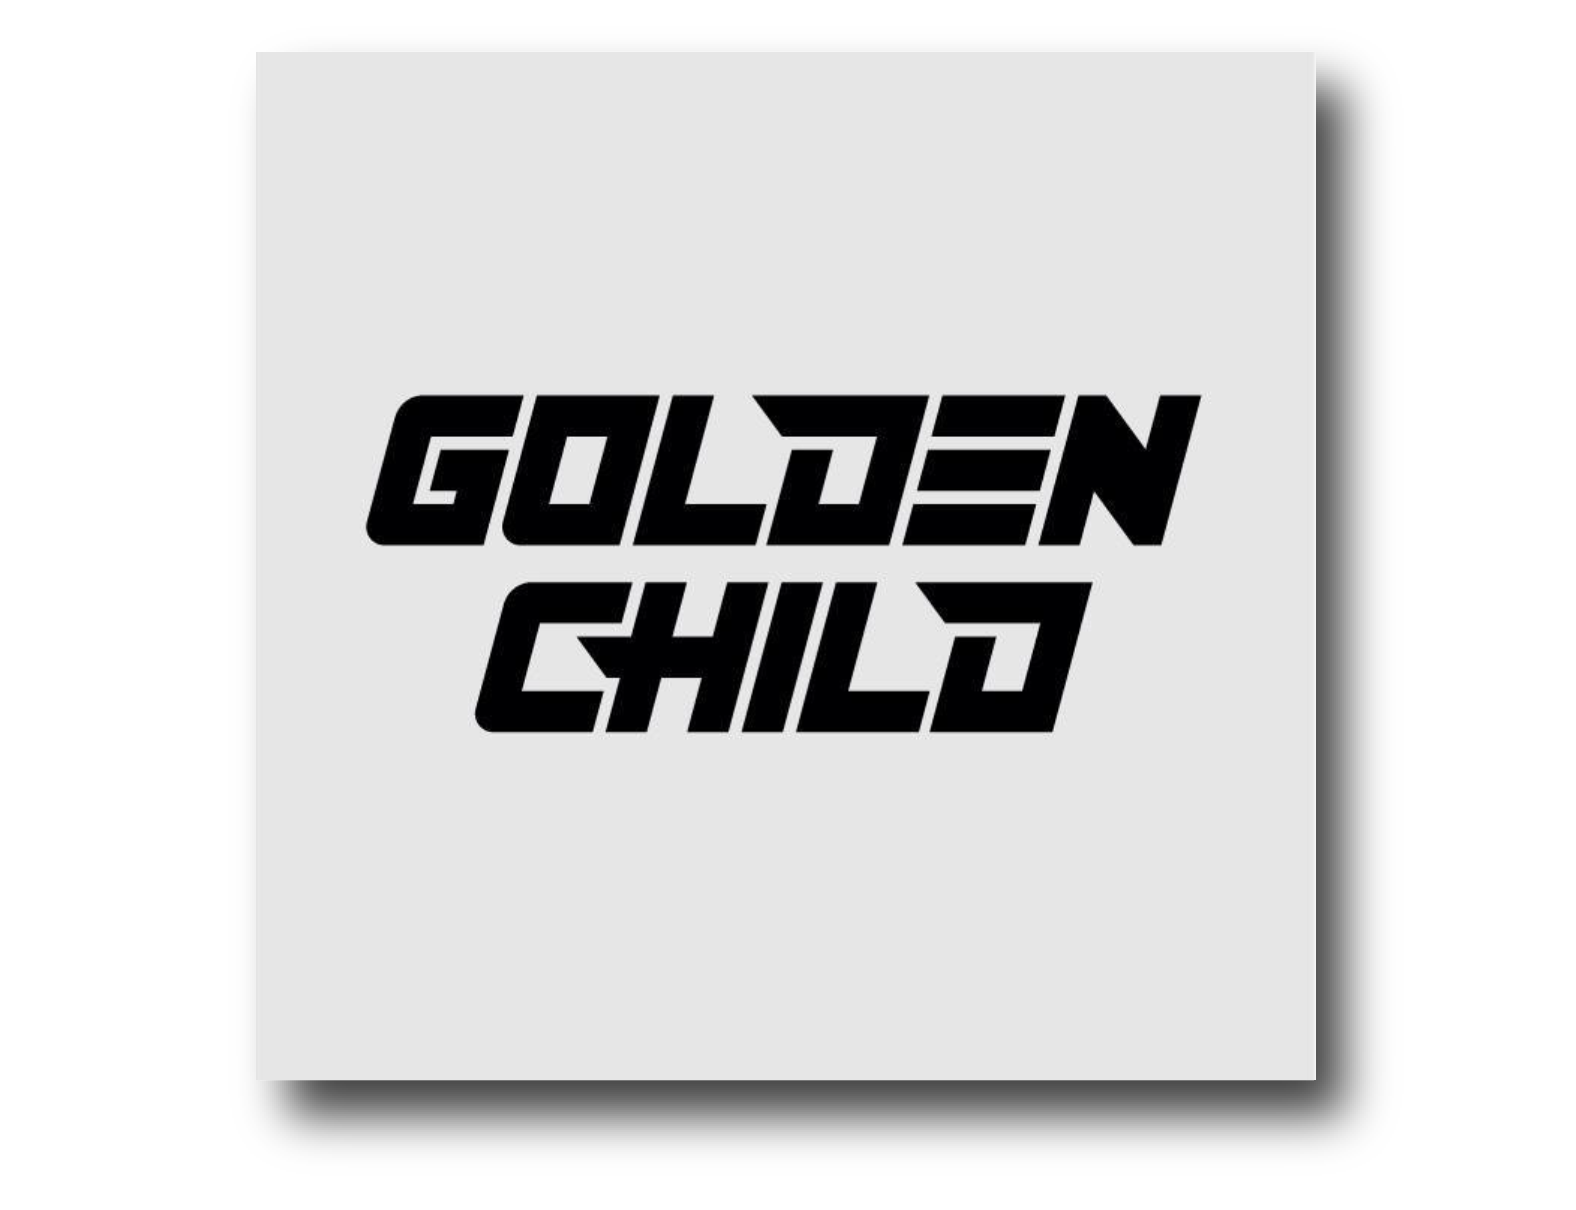 Golden Child - Take A Leap